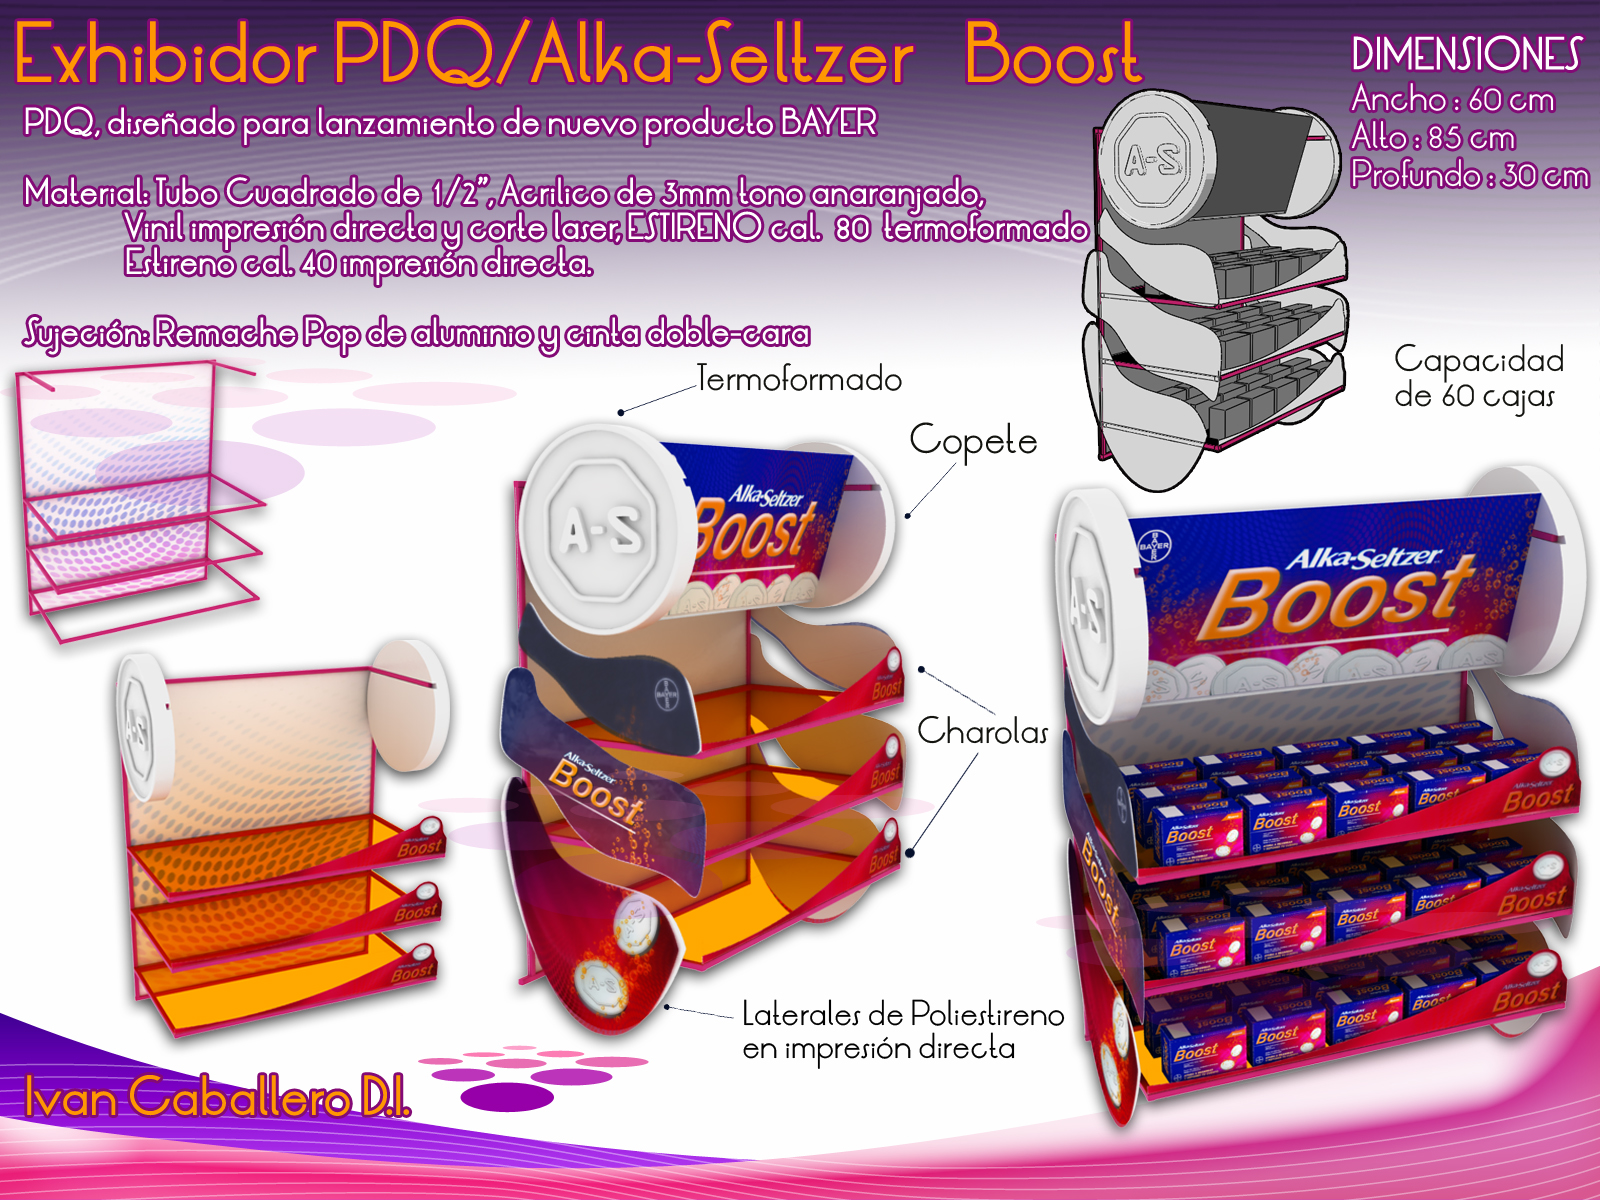 Exihbidor PDQ de Alka-Seltzer Boost